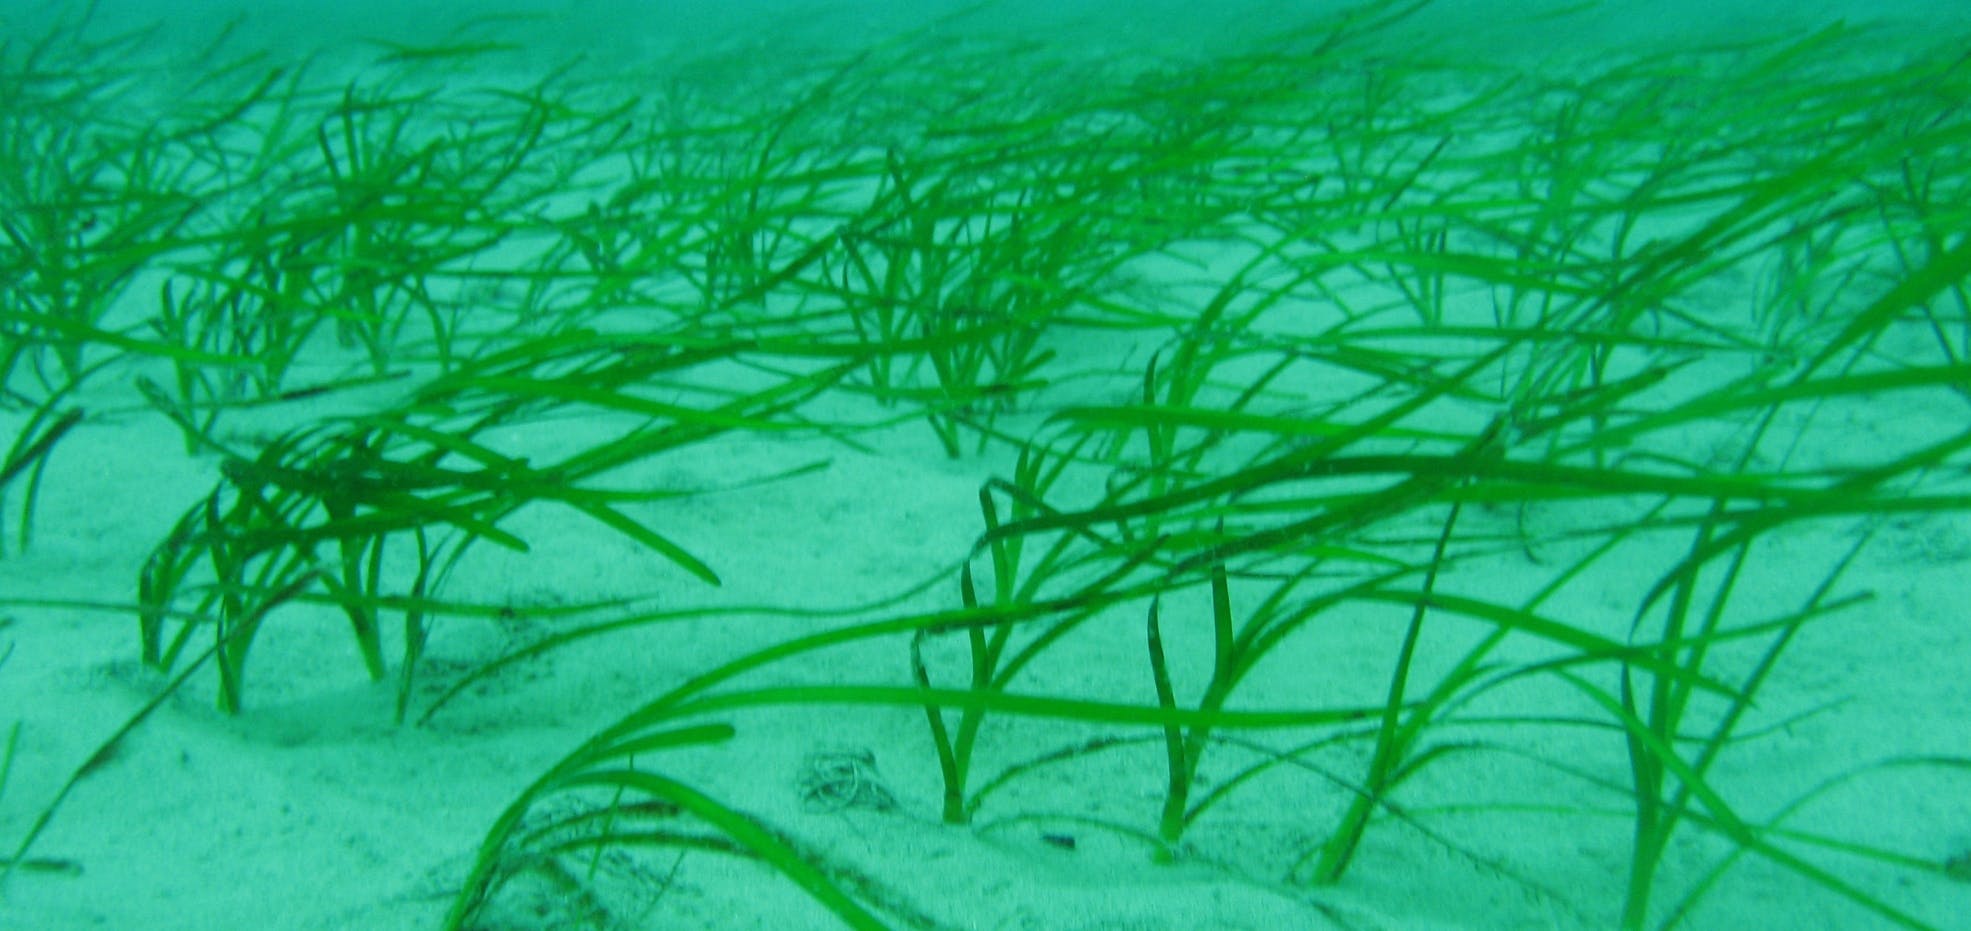 Underwater eel grass